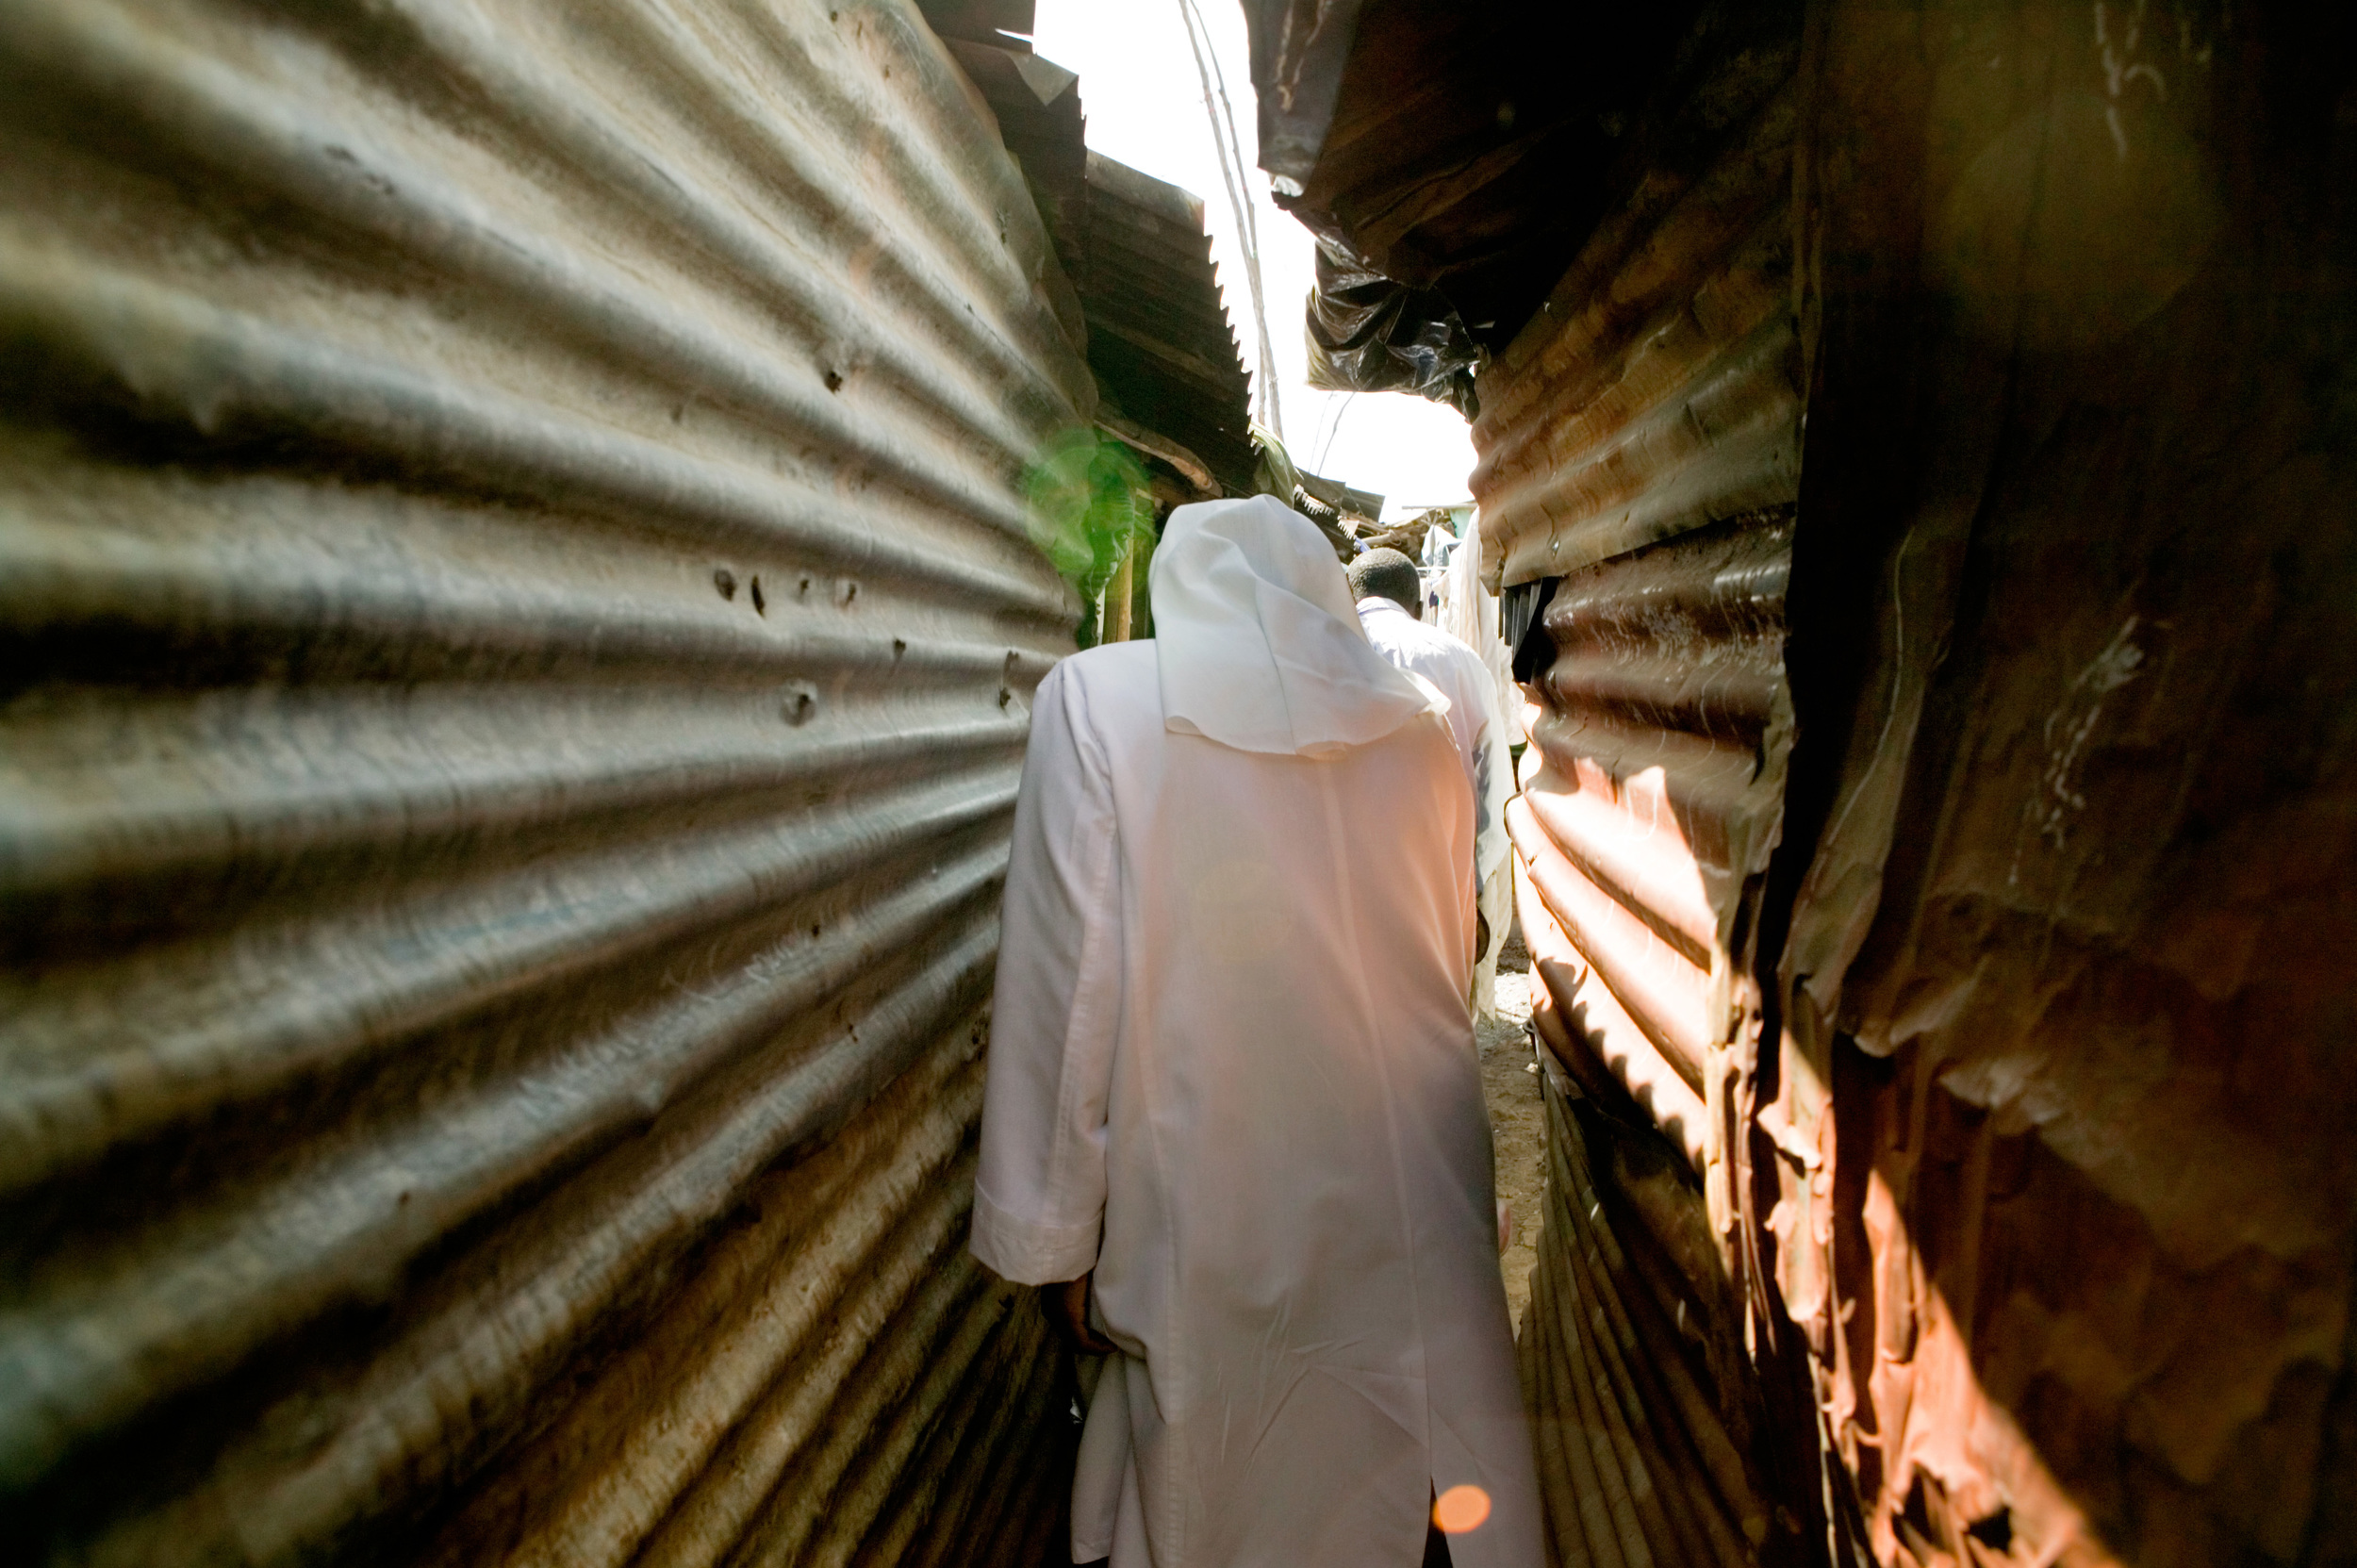 Mukuru slum, Nairobi, Kenya: Sisters of Mercy